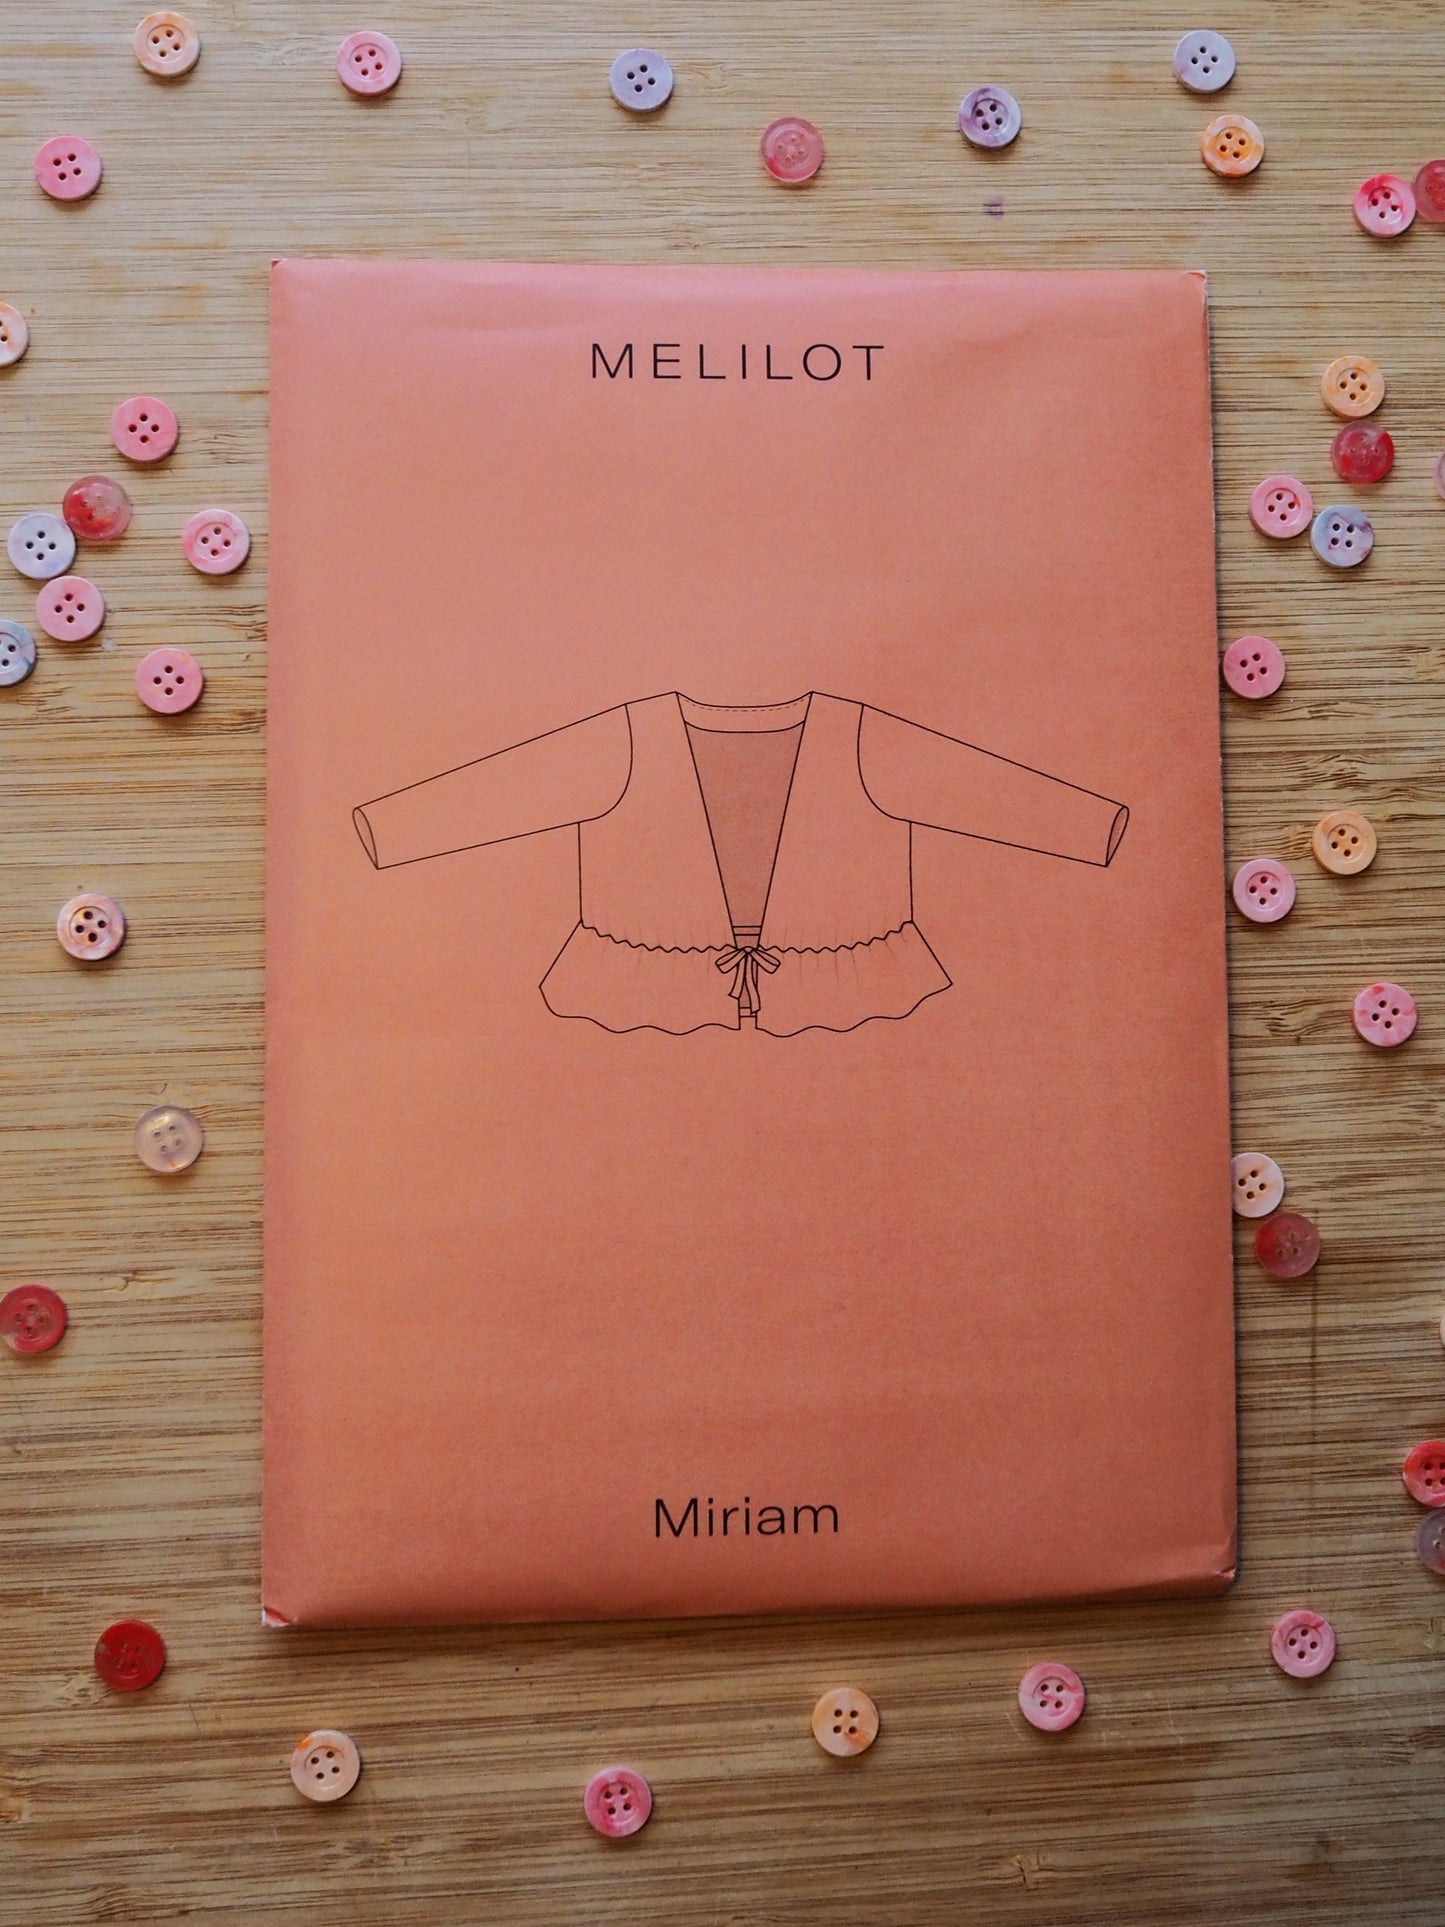 Melilot - Miriam